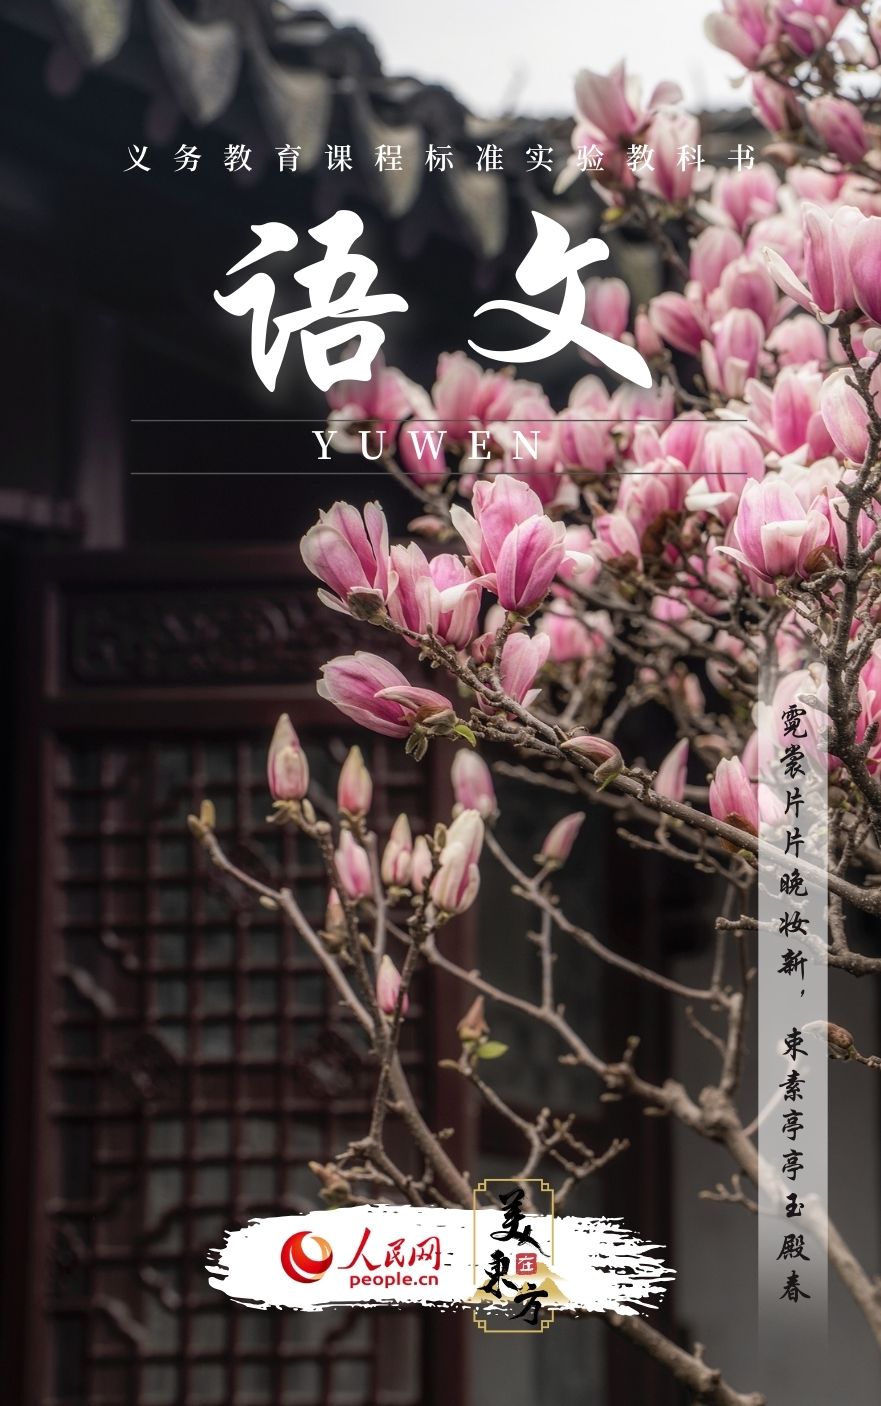 江苏苏州网师园玉兰一树繁花迎春来。”有游客在武汉夜赏樱花时说道
。华阳
、